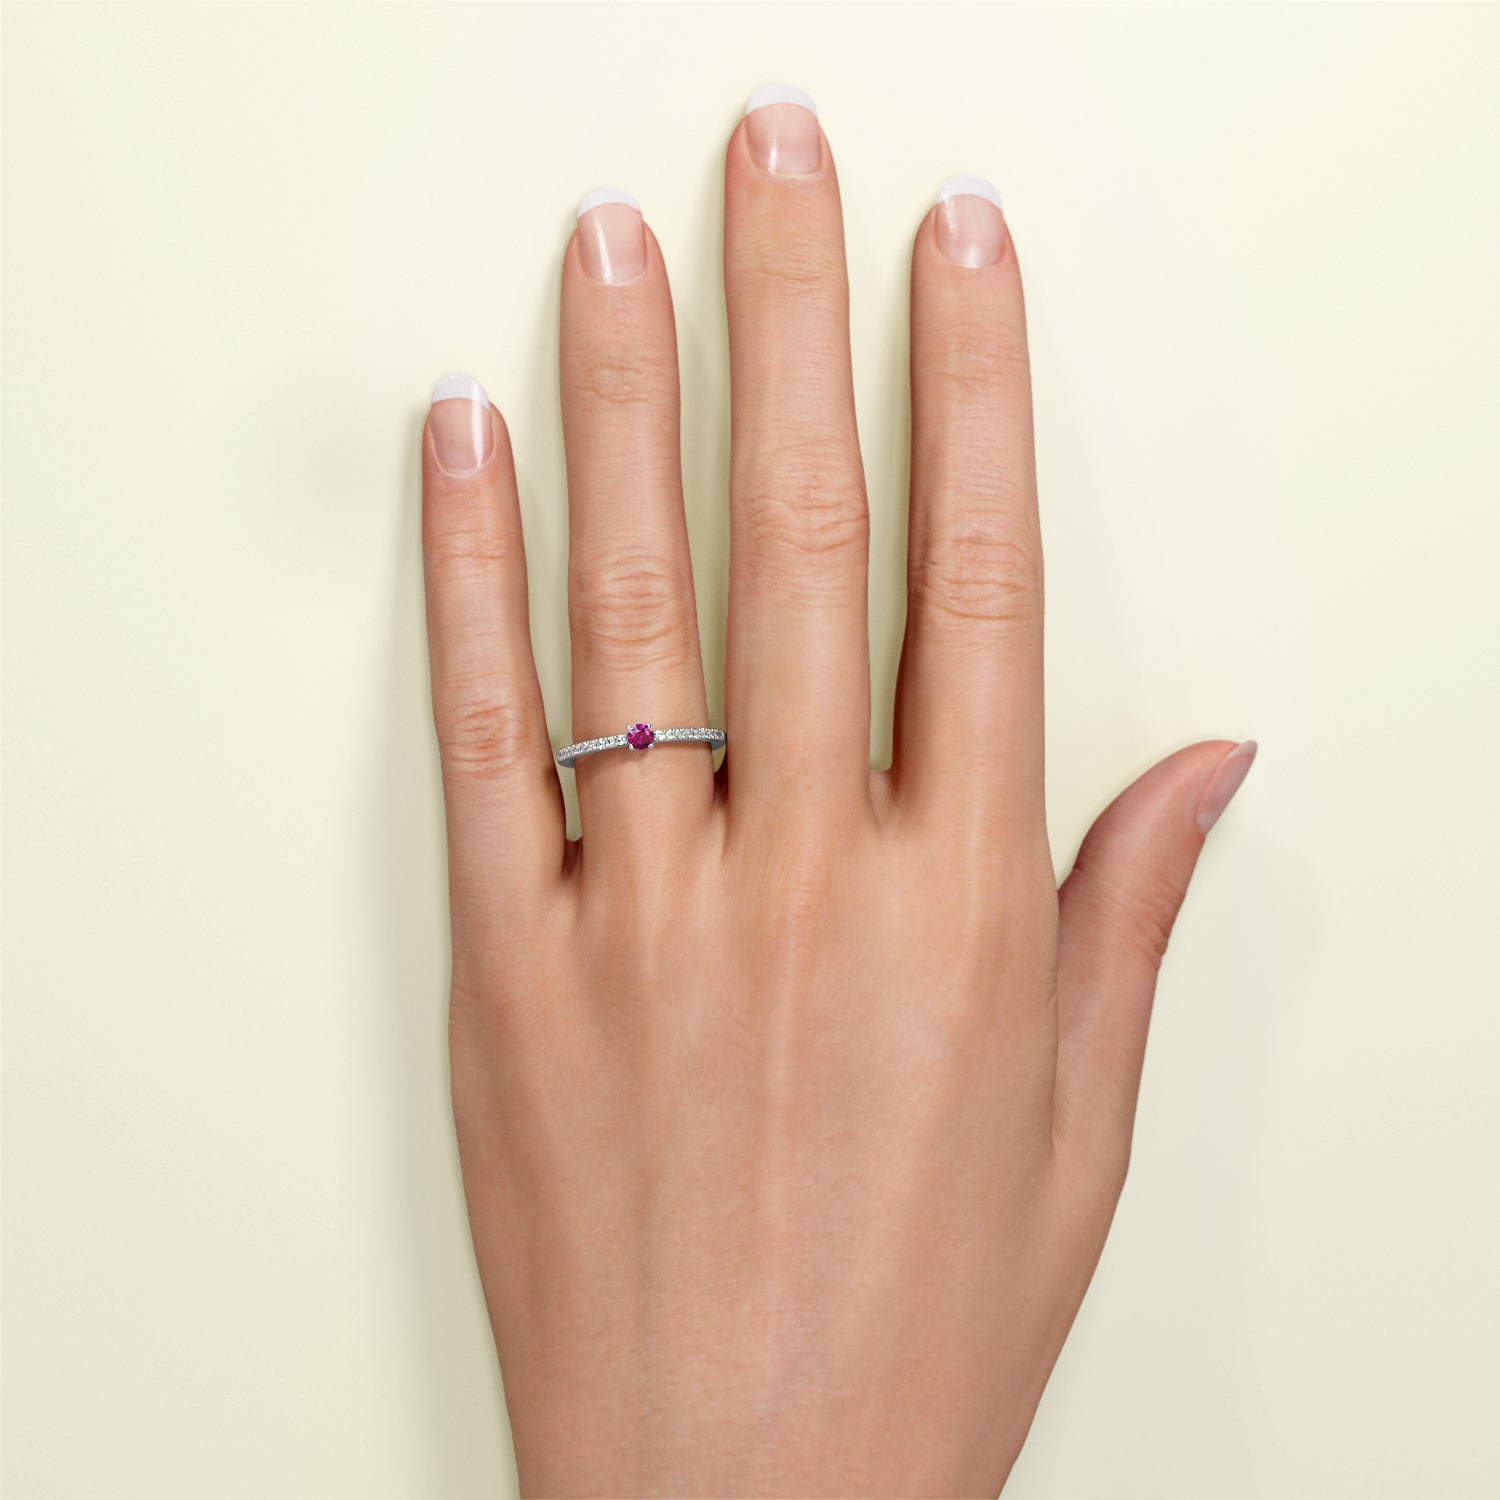 Birthstone Ring Jänner in Weißgold mit rotem Granat und Diamanten, am Finger getragen. Von FENA daily Jewellery.